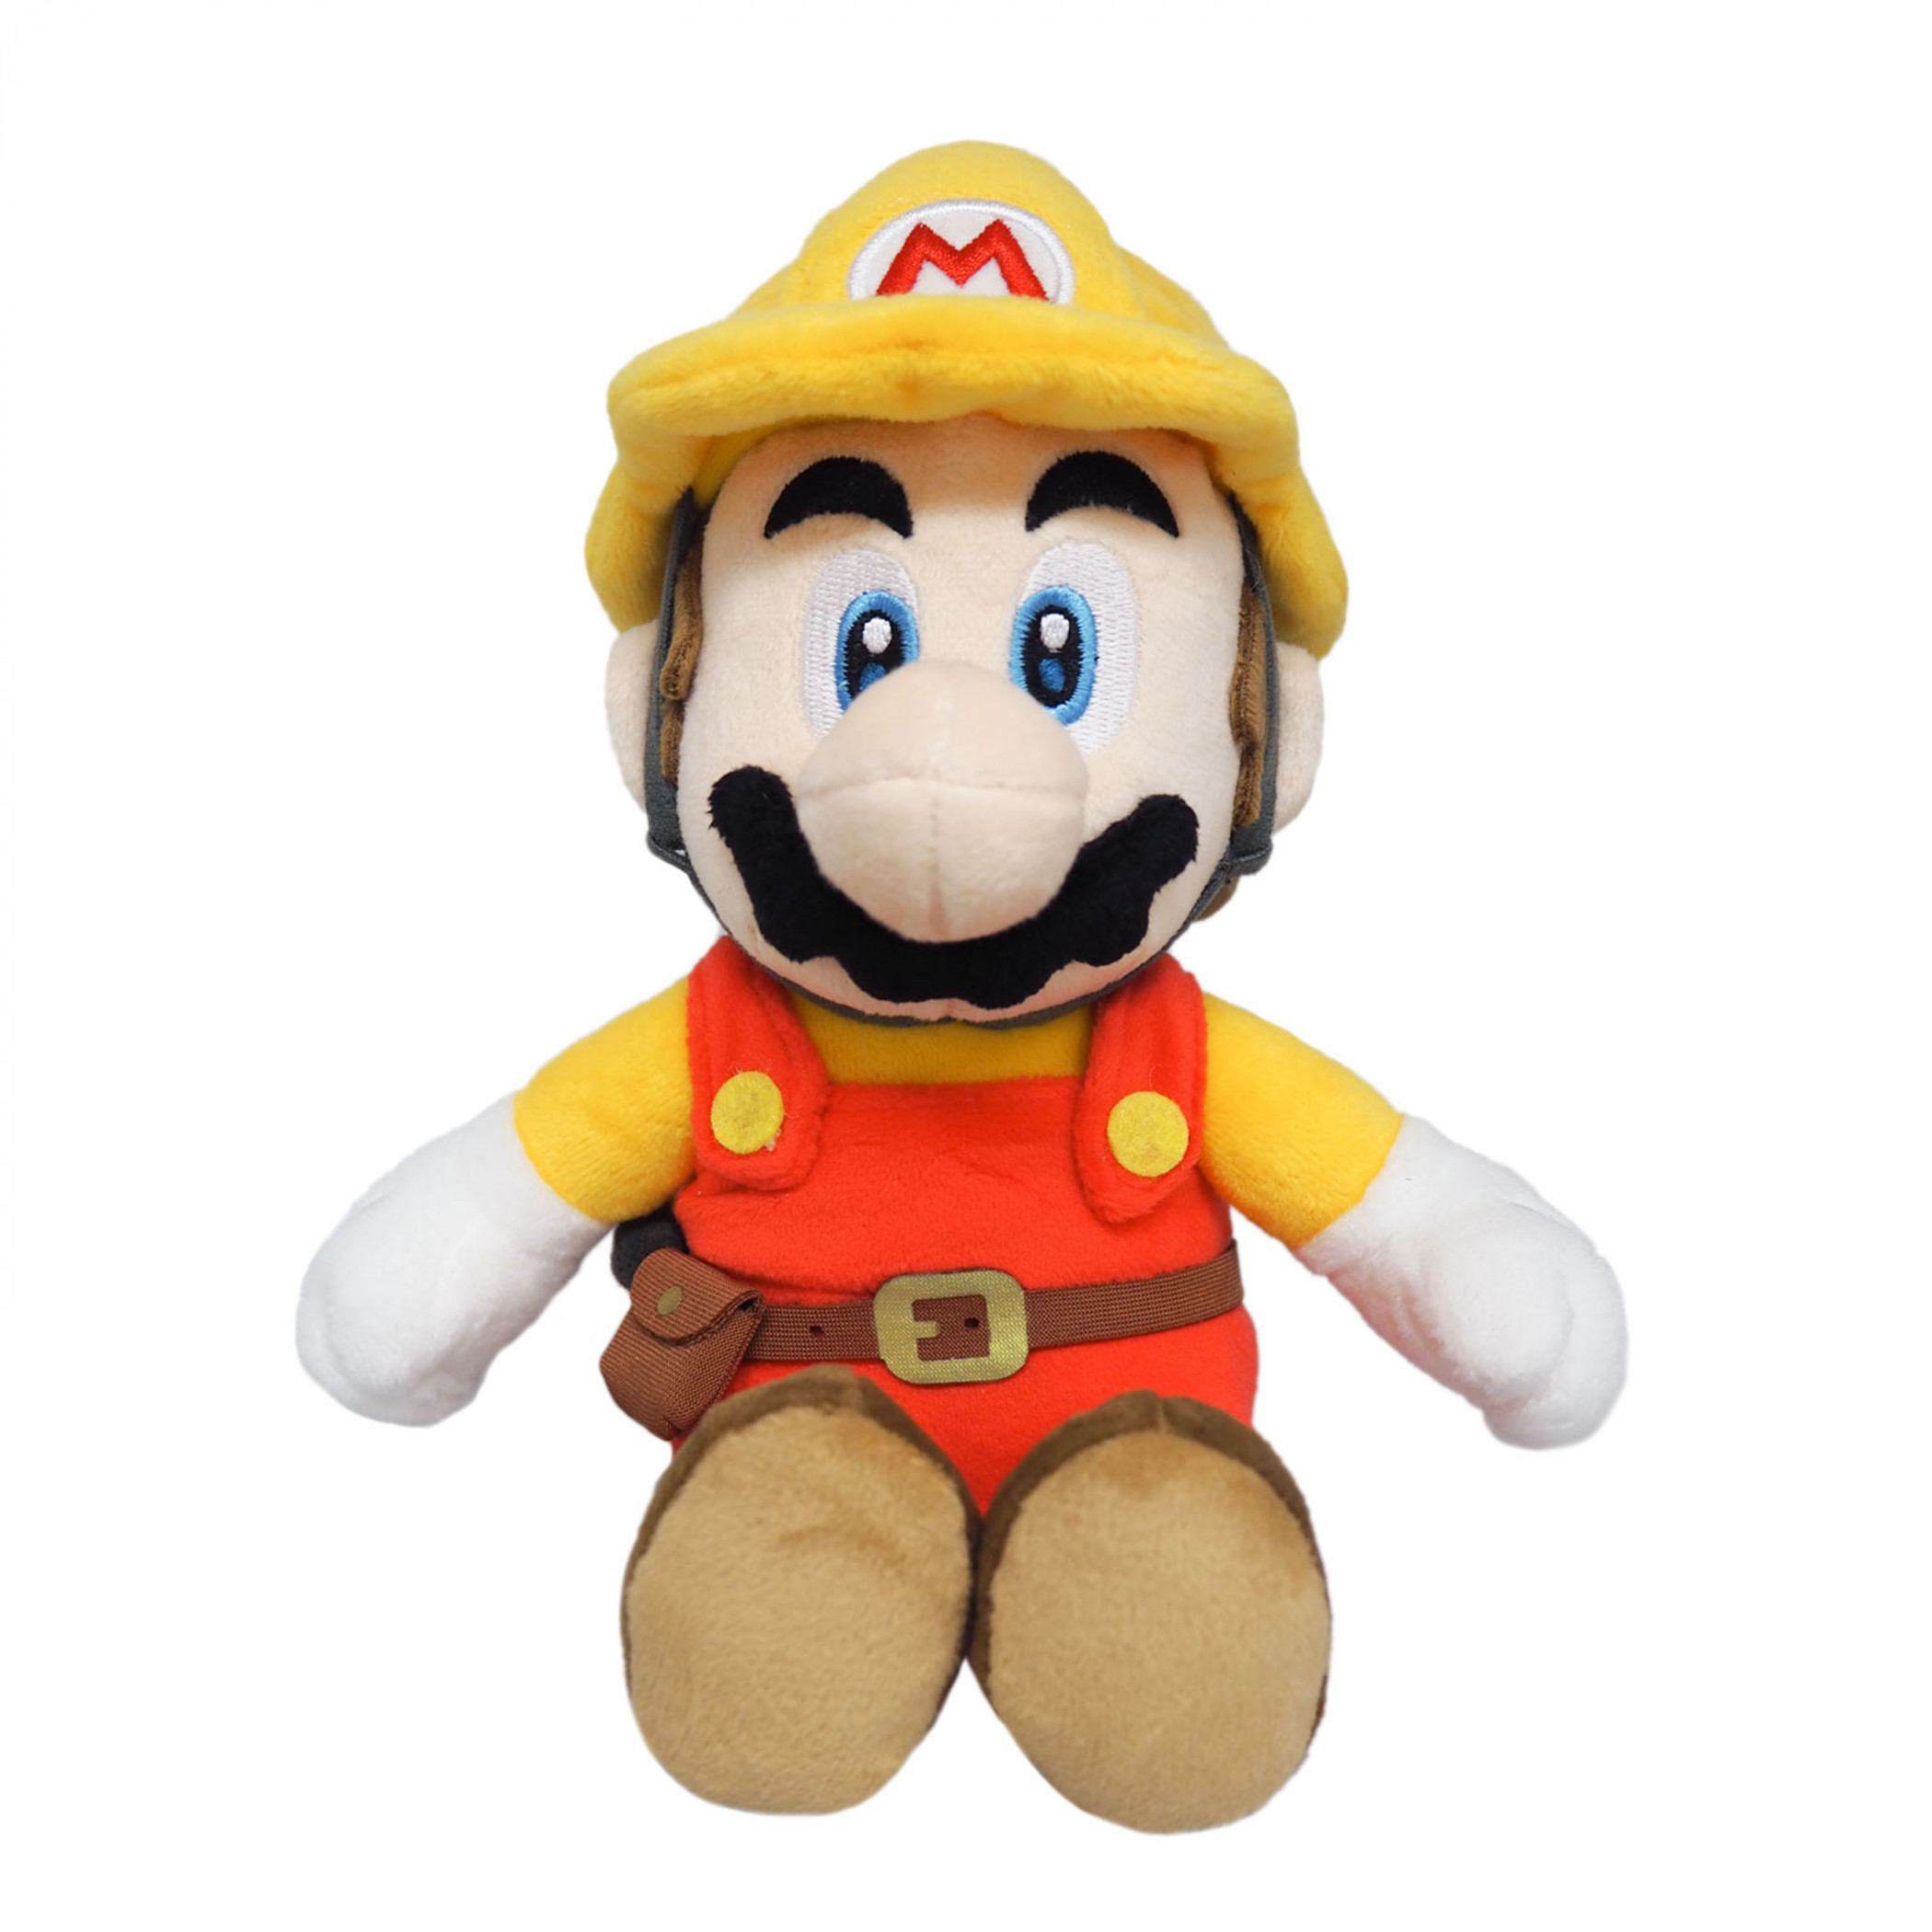 Super Mario Bros. Builder Mario 10" Plush Toy